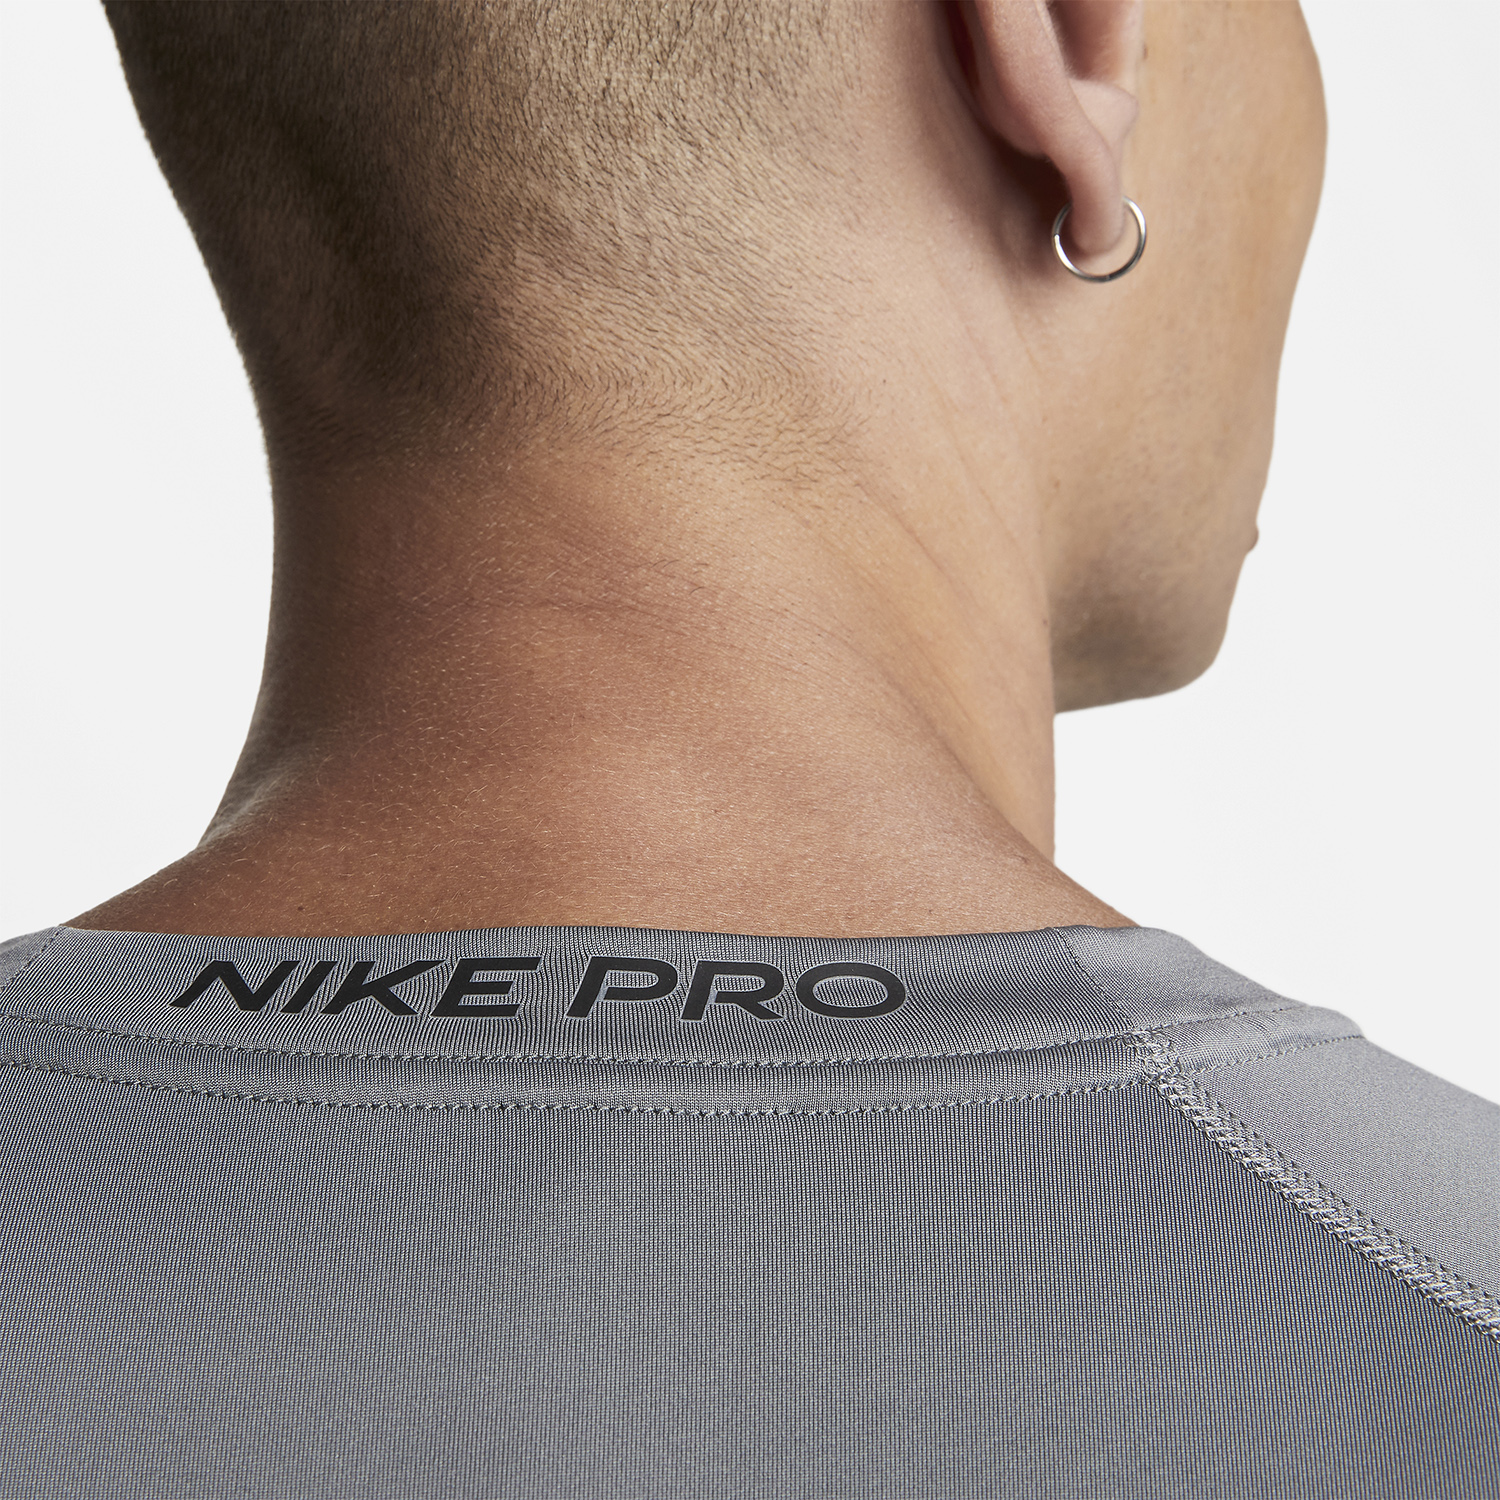 Nike Dri-FIT Logo Camiseta - Smoke Grey/Black